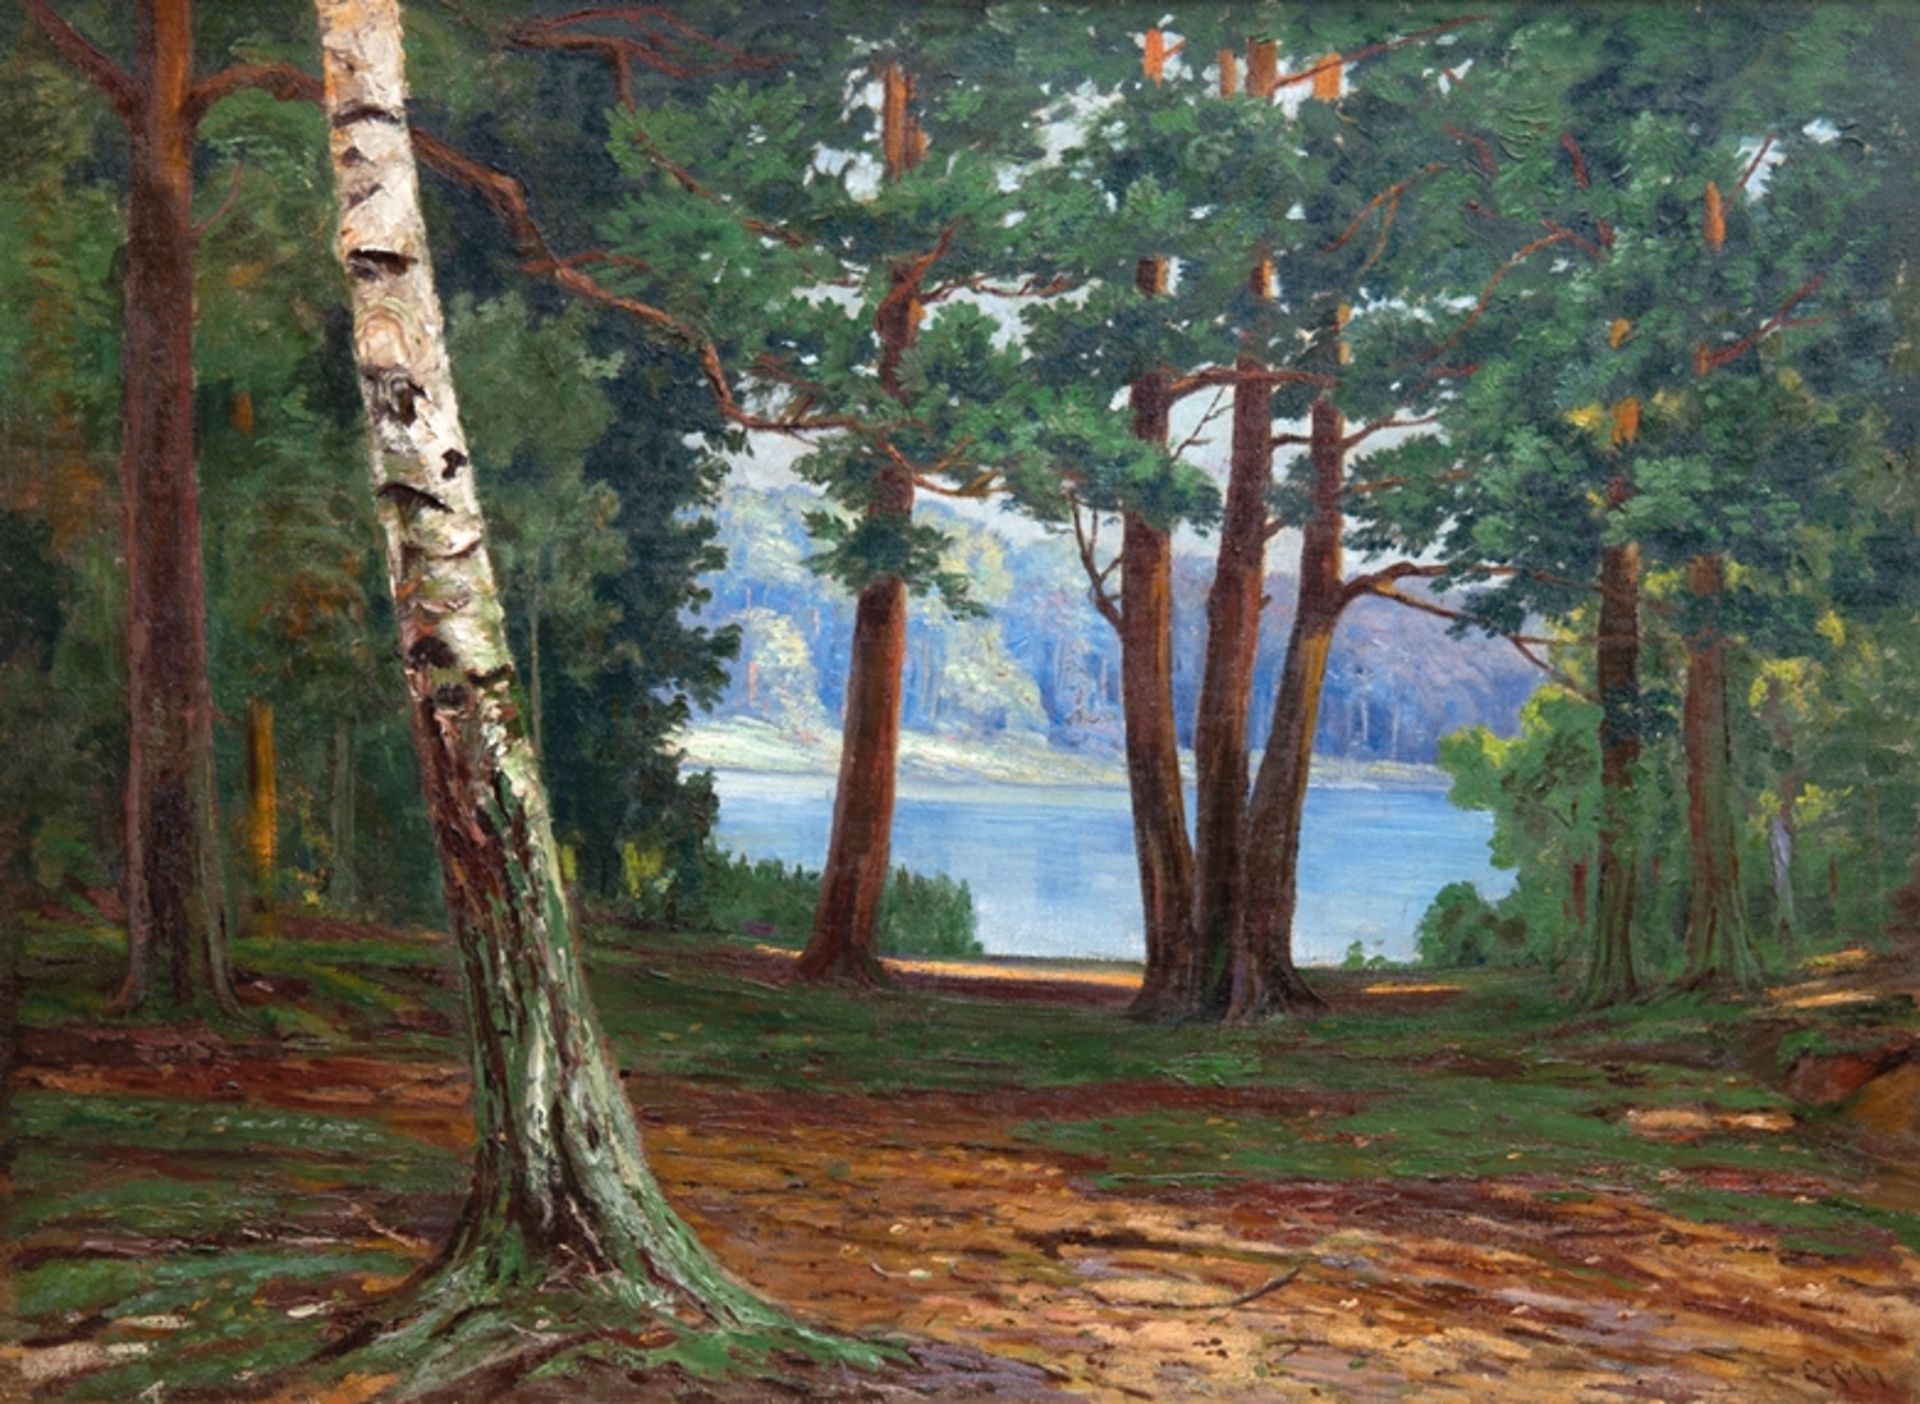 Eicken, Elisabeth von (1862 Mühlheim a.d.Ruhr-1940 Potsdam) "Impressionistische Landschaft mit Blic